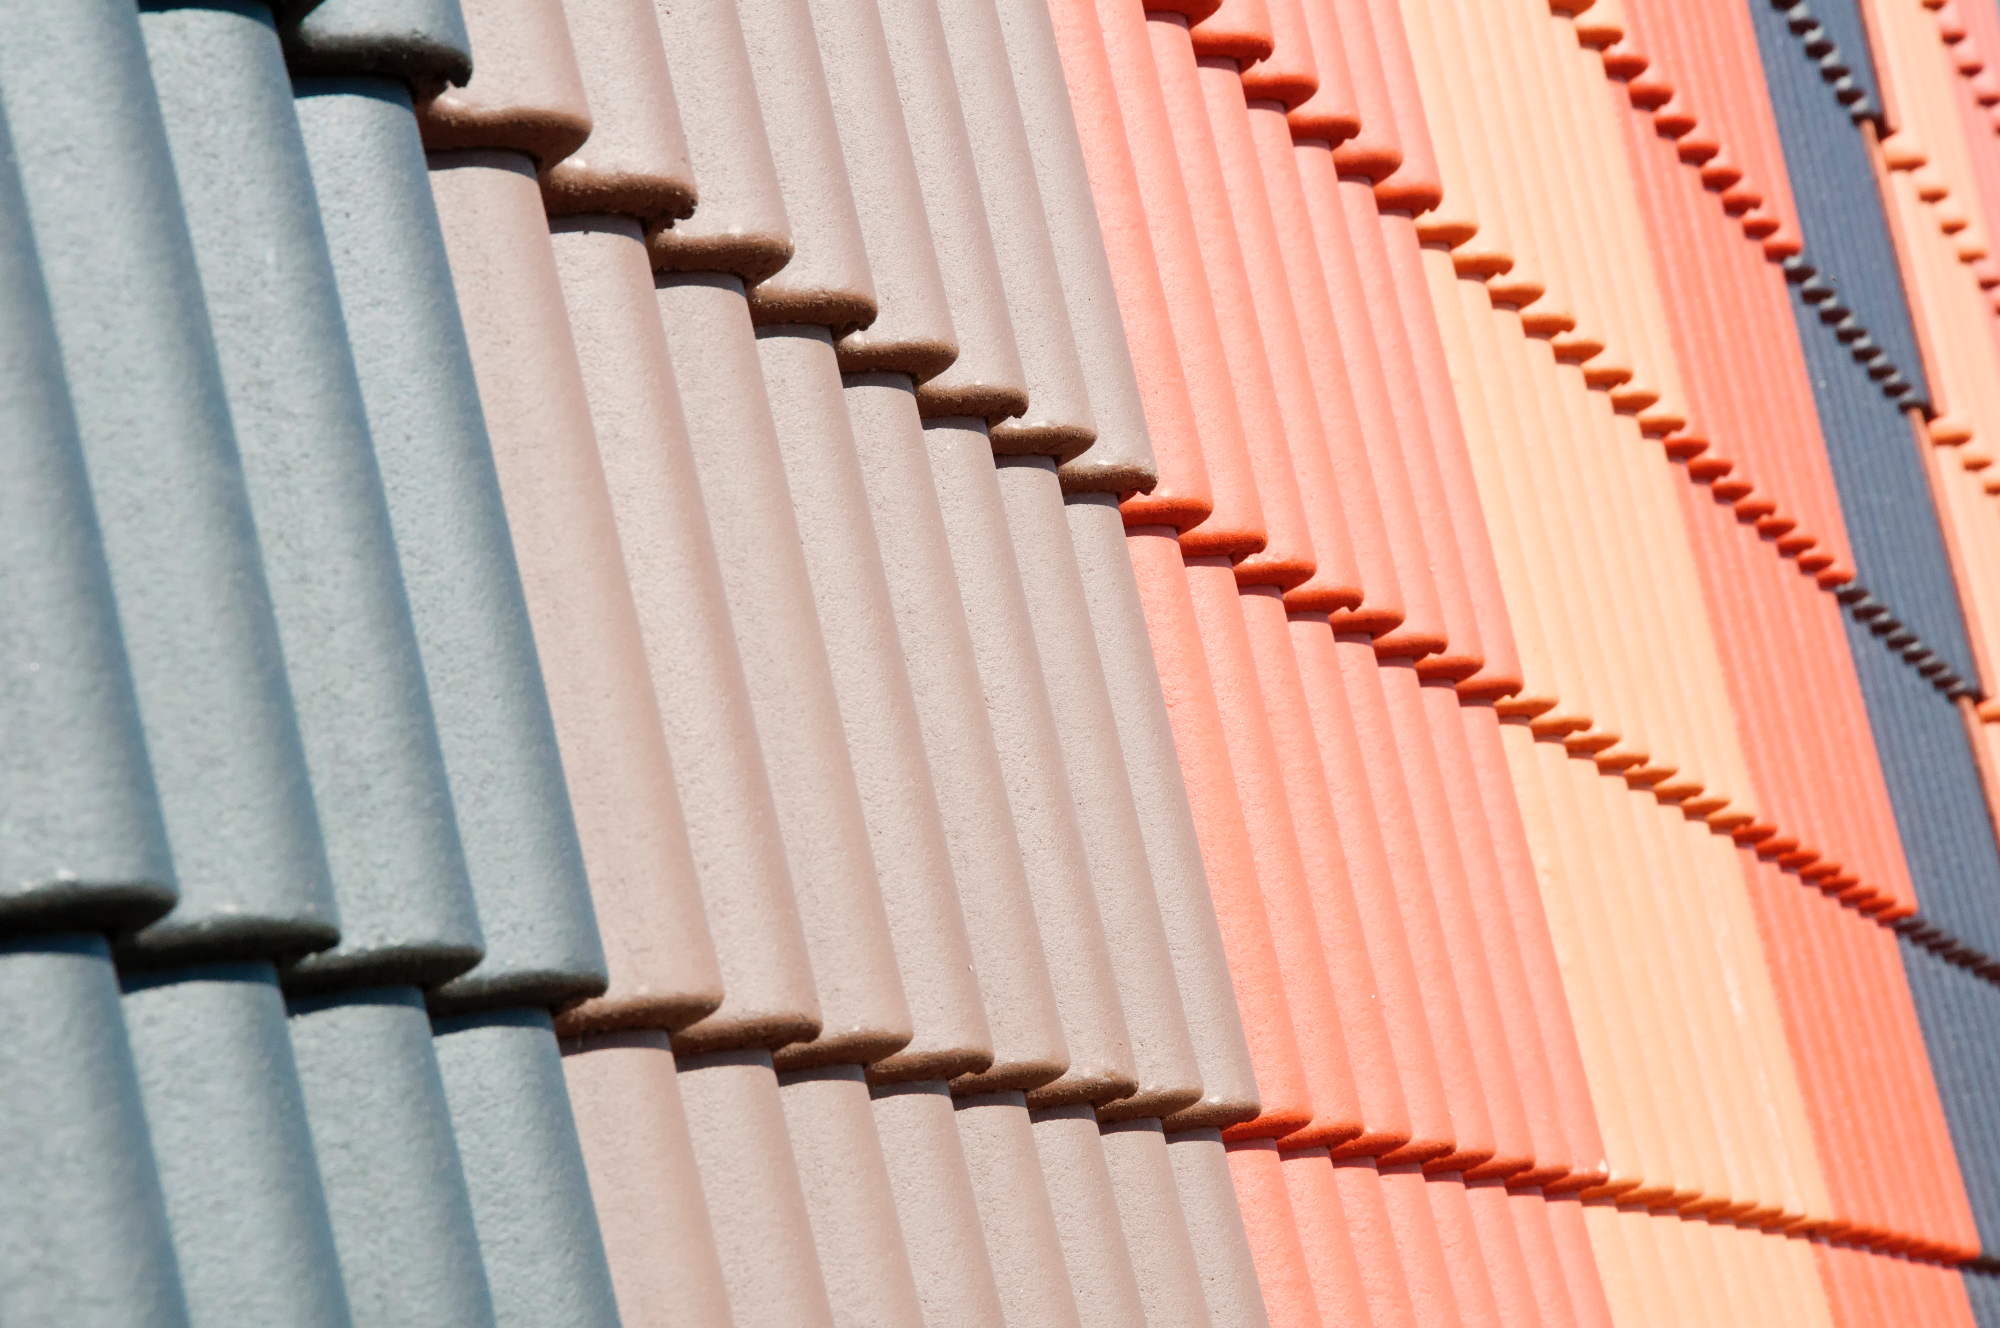 Ali veste, kateri strešniki so idealni za vašo streho in zakaj?